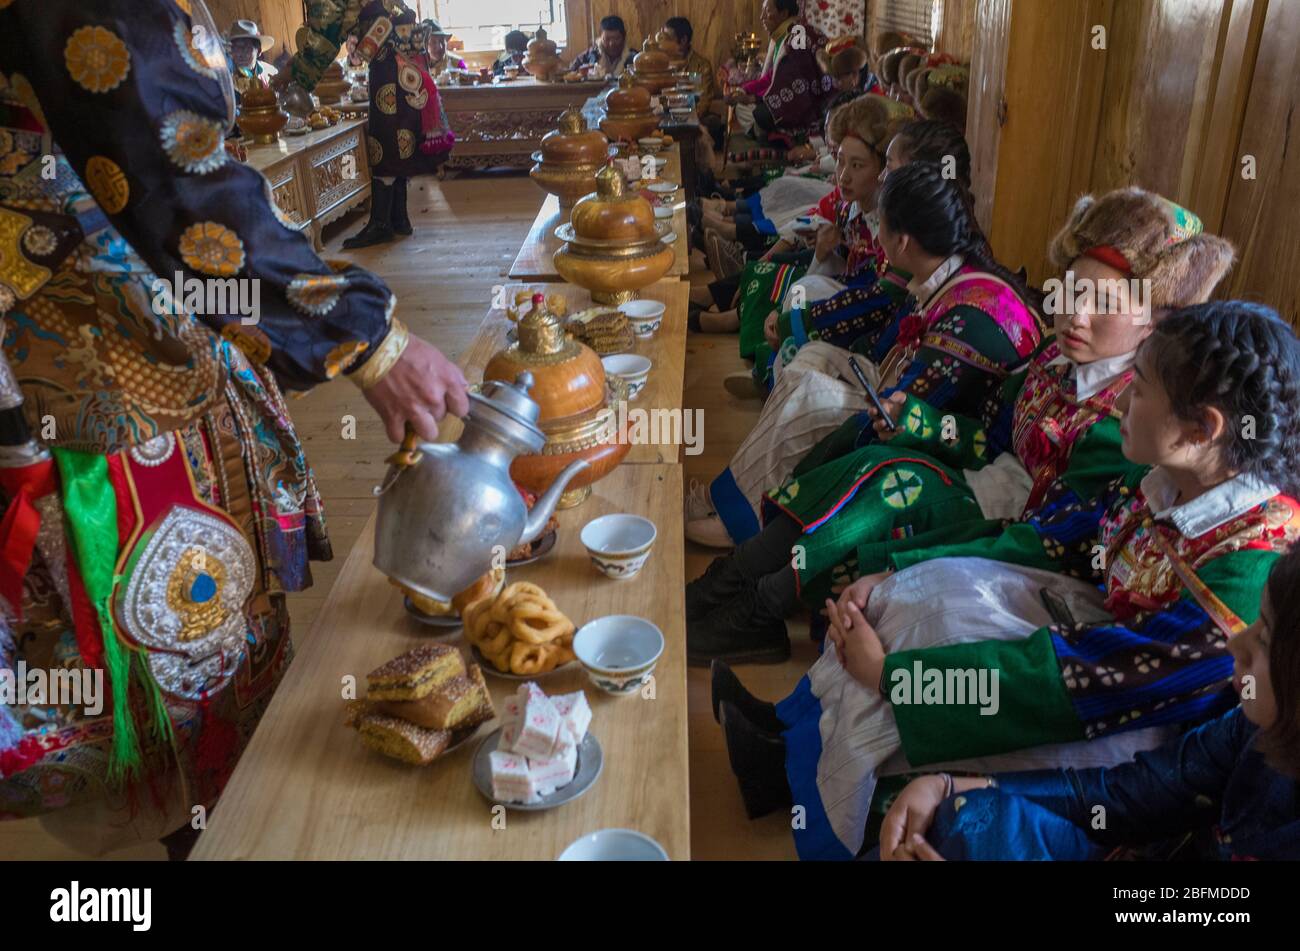 Homme servant de la nourriture aux demoiselles d'honneur lors d'un mariage bouddhiste. Shangri la Chine 2019 Banque D'Images